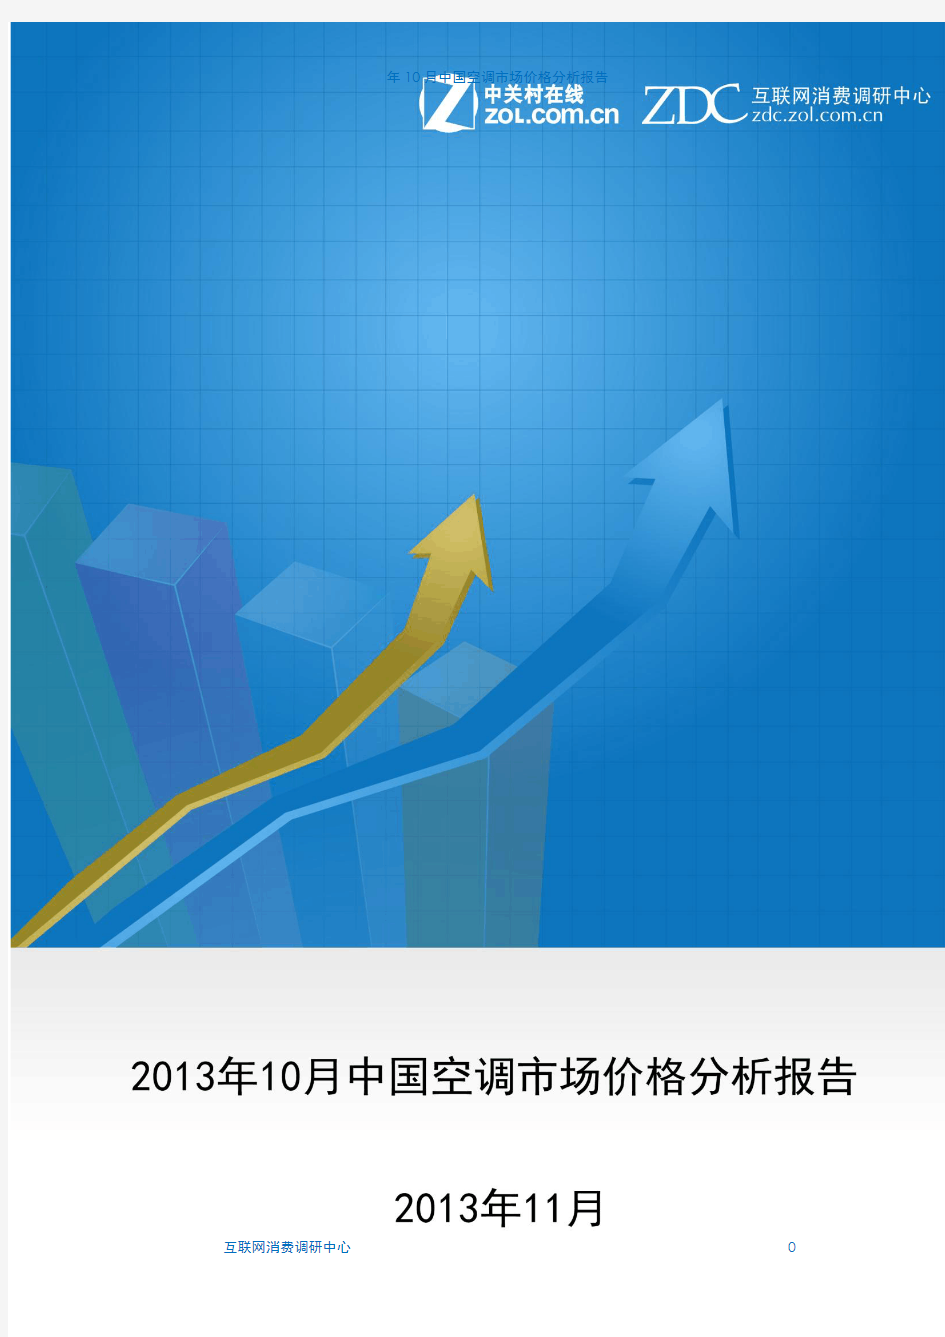 2013年10月中国空调市场价格分析报告